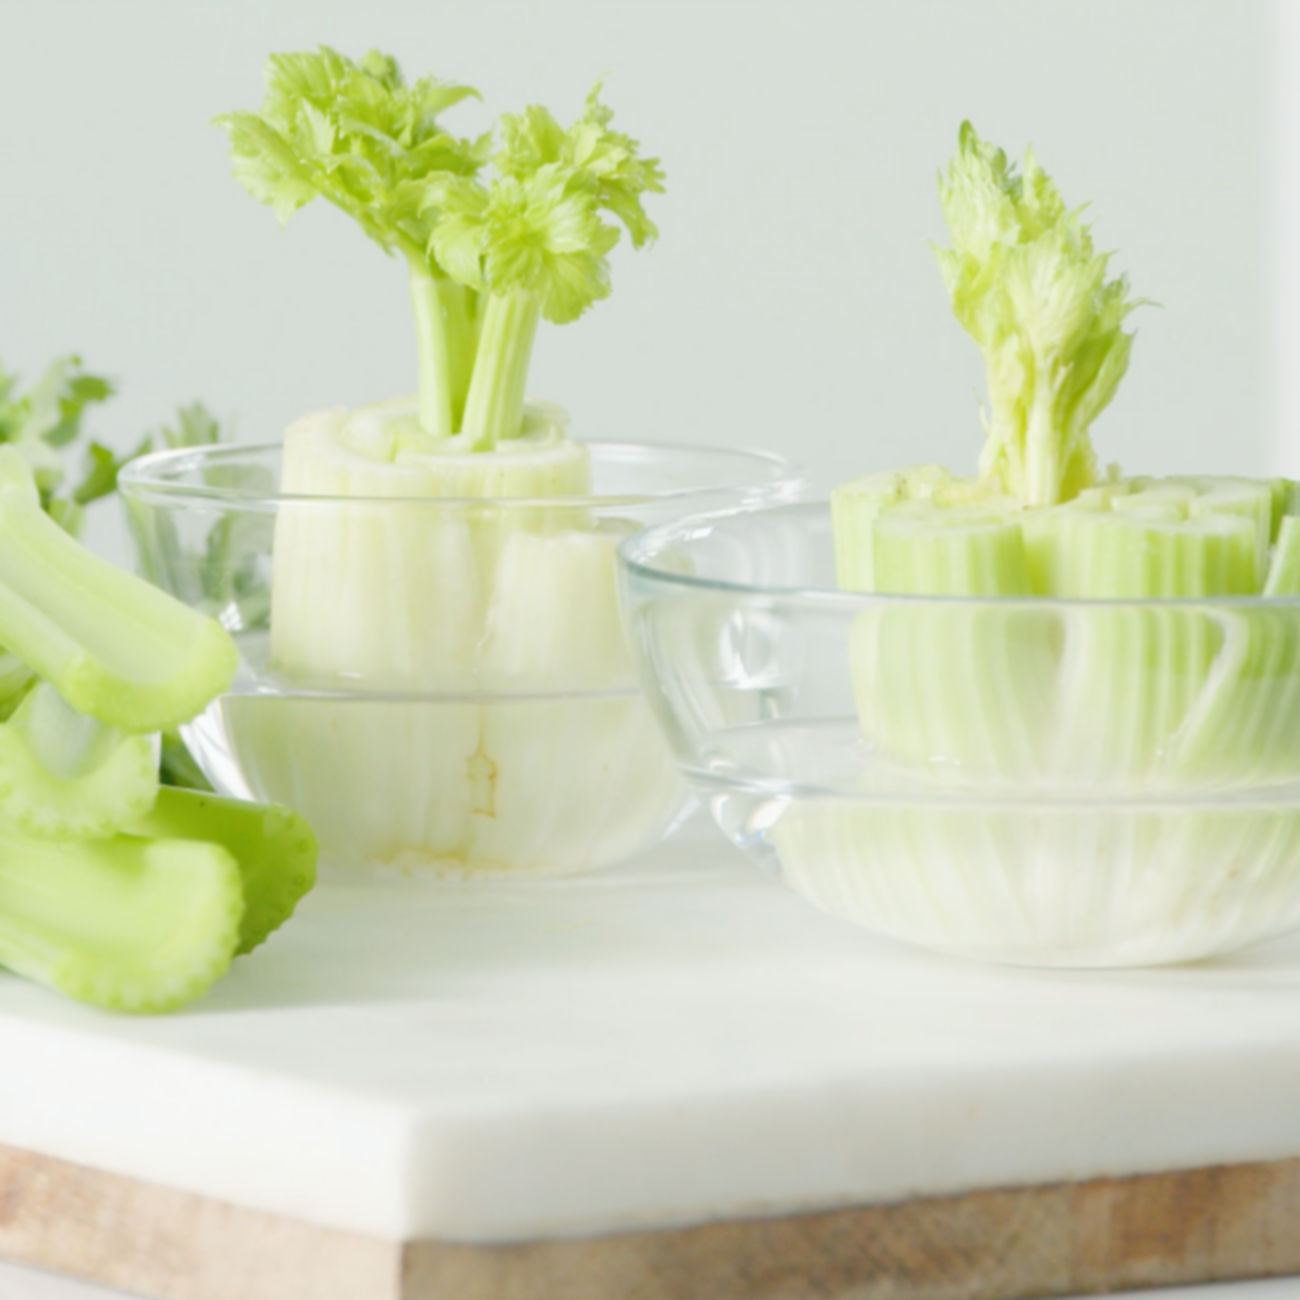 How to Regrow Celery from Scraps